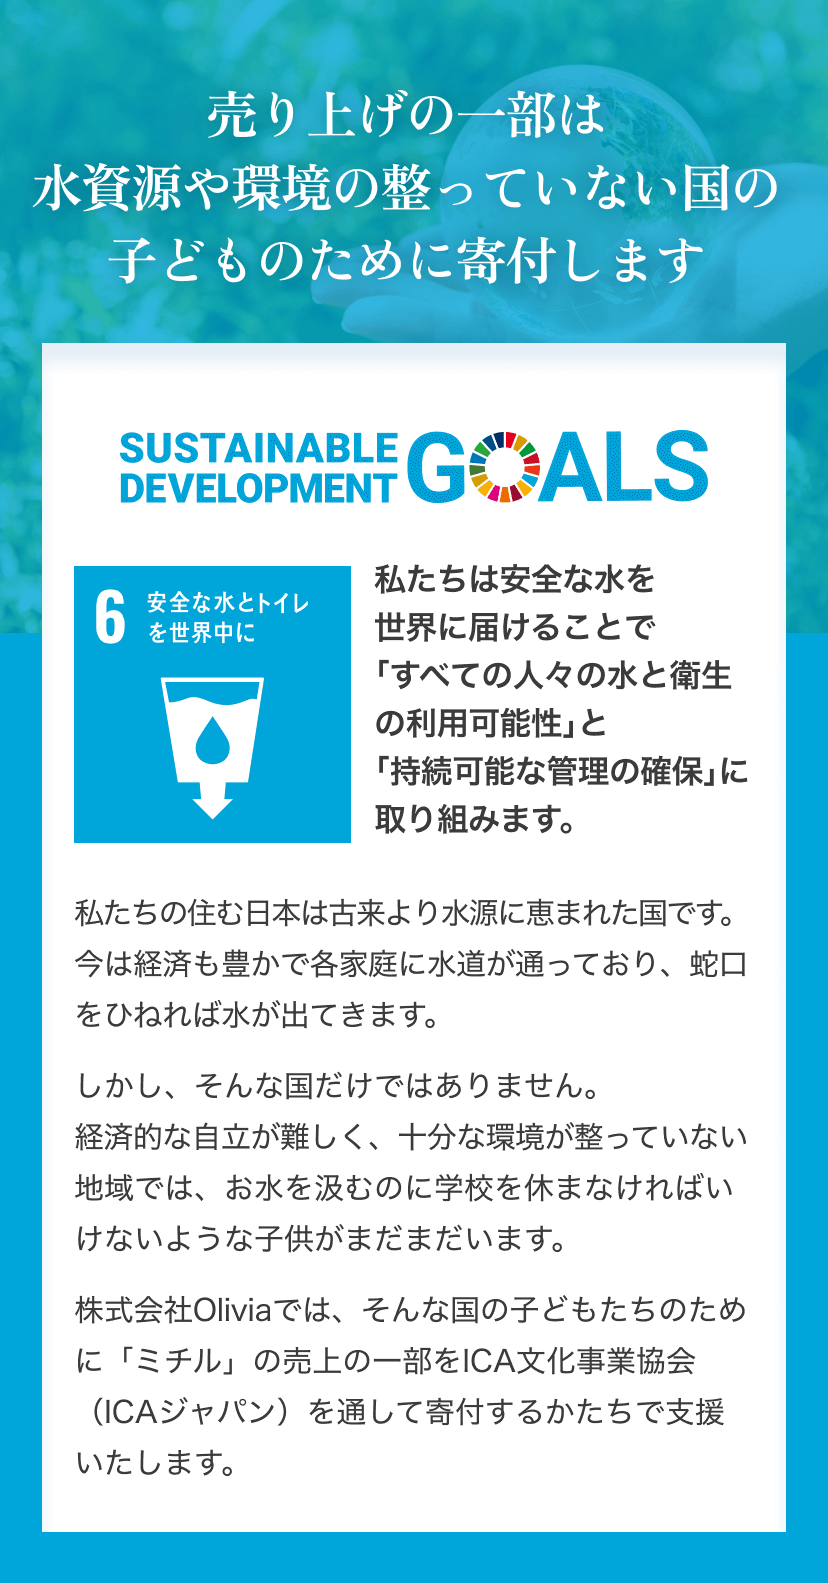 売り上げの一部は水資源や環境の整っていない国の子どものために寄付します 「SUSTAINABLE DEVELOPMENT GOALS」(SDGs)のロゴ SDGs6「安全な水とトイレを世界中に」のアイコン画像 私たちは安全な水を 世界に届けることで「すべての人々の水と衛生の利用可能性」と「持続可能な管理の確保」に取り組みます。私たちの住む日本は古来より水源に恵まれた国です。今は経済も豊かで各家庭に水道が通っており、蛇口をひねれば水が出てきます。しかし、そんな国だけではありません。経済的な自立が難しく、十分な環境が整っていない地域では、お水を汲むのに学校を休まなければいけないような子供がまだまだいます。株式会社Oliviaでは、そんな国の子どもたちのために「ミチル」の売上の一部をICA文化事業協会（ICAジャパン）を通して寄付するかたちで支援いたします。